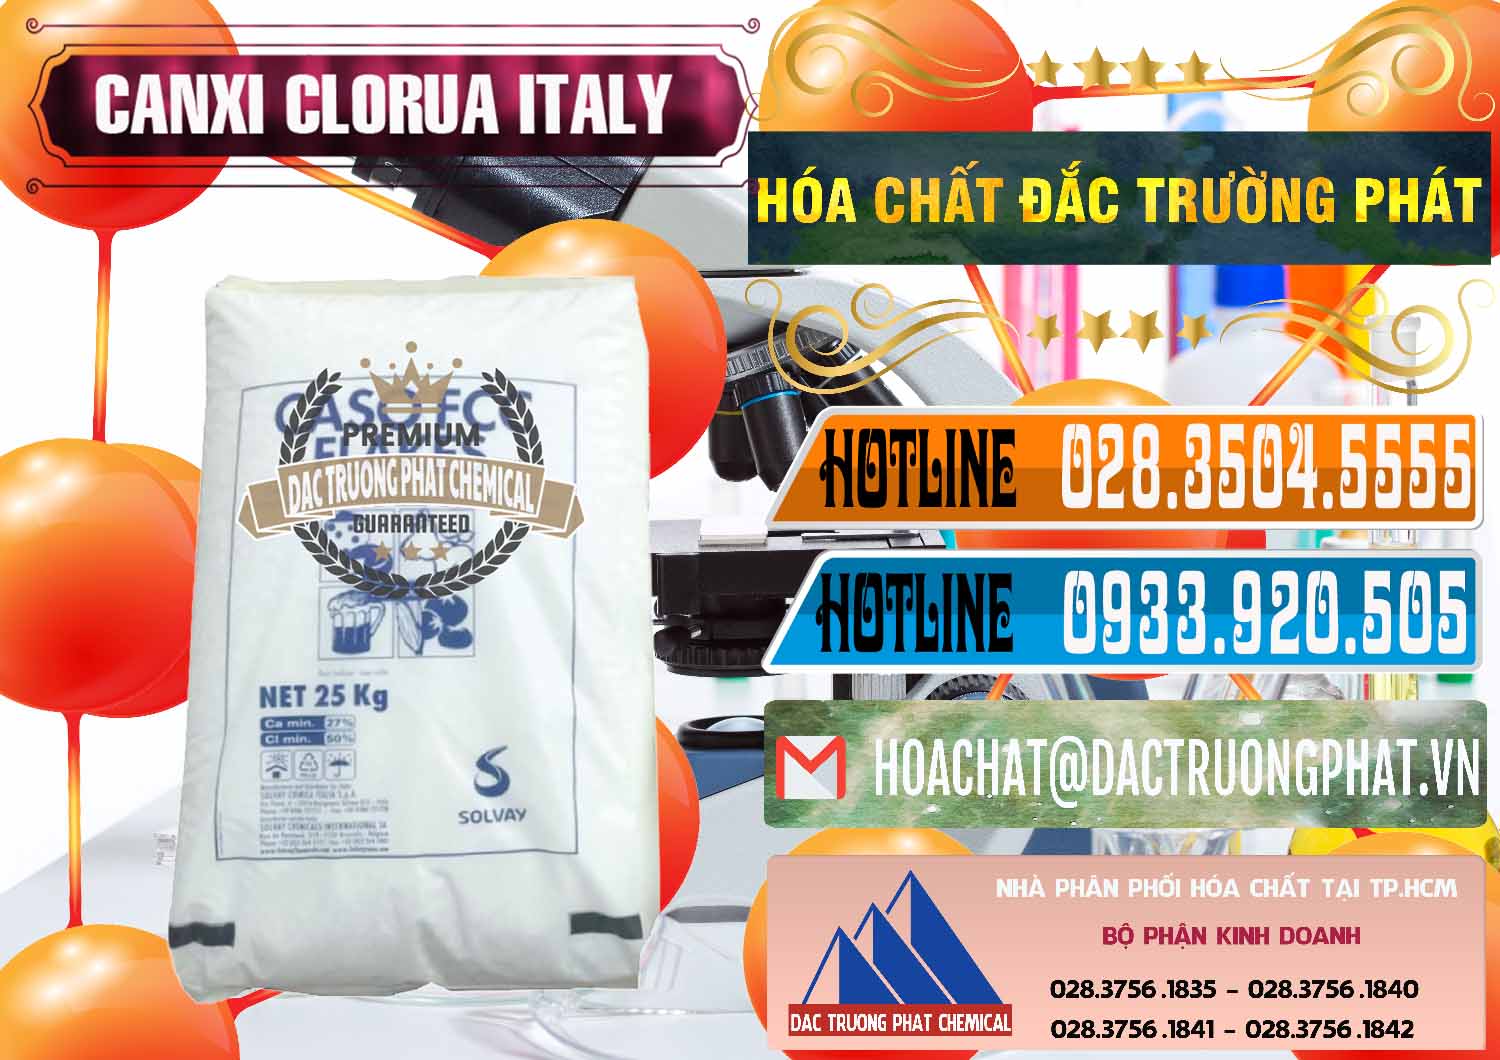 Cty bán - cung cấp CaCl2 – Canxi Clorua Food Grade Ý Italy - 0435 - Nhà phân phối và cung cấp hóa chất tại TP.HCM - stmp.net